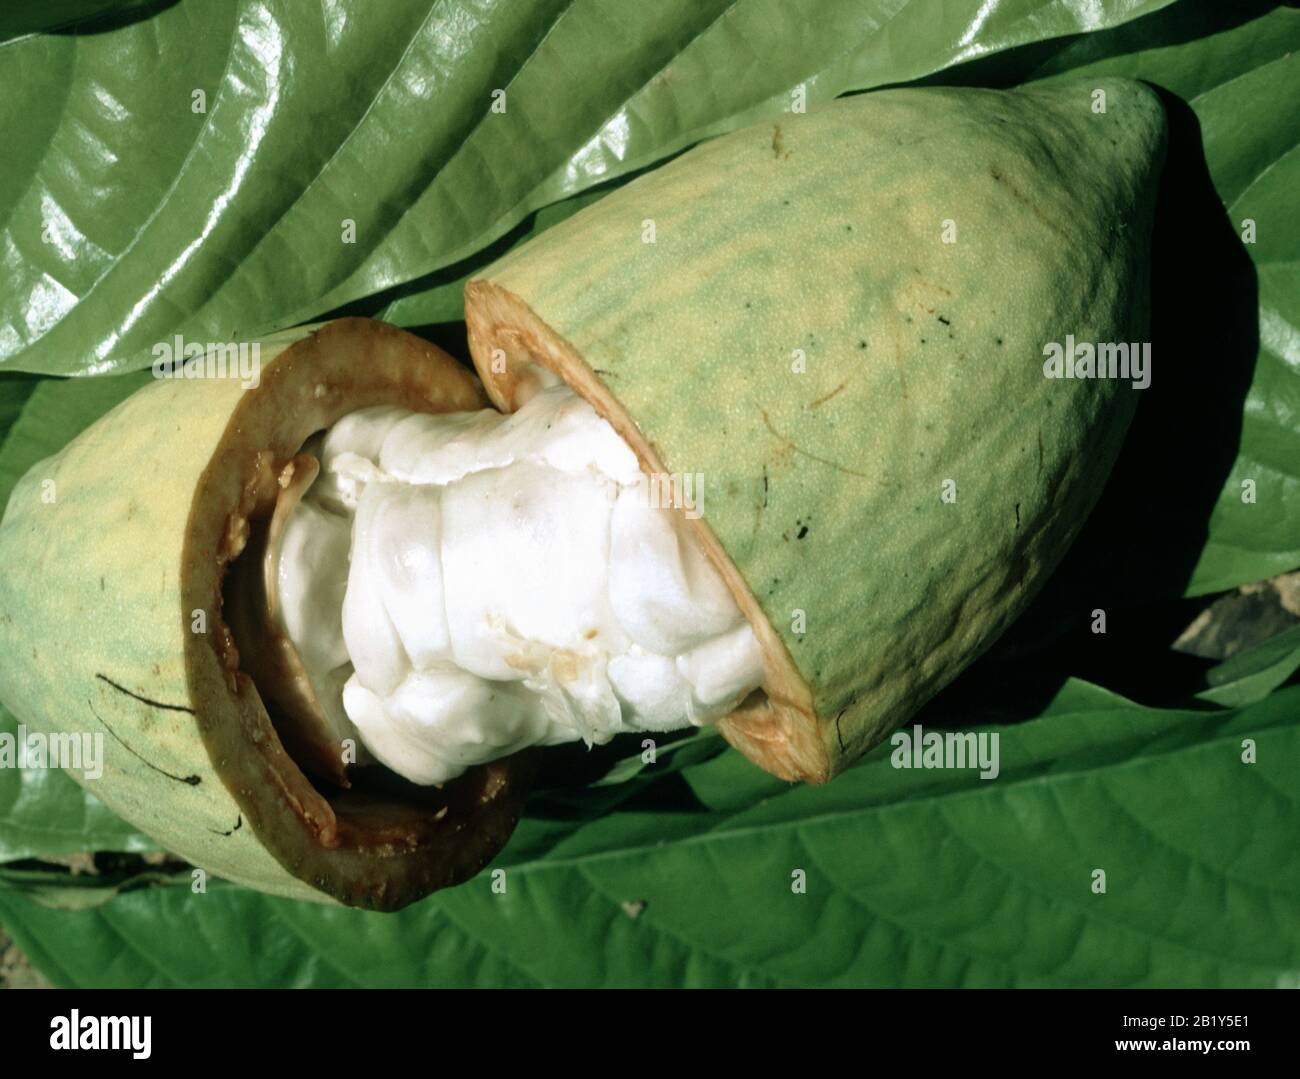 Un baccello coacoa aperto (Theobroma cacao) per mostrare fagioli e pasta bianca che può essere usato in bevande e frullati, Malesia, febbraio. Foto Stock